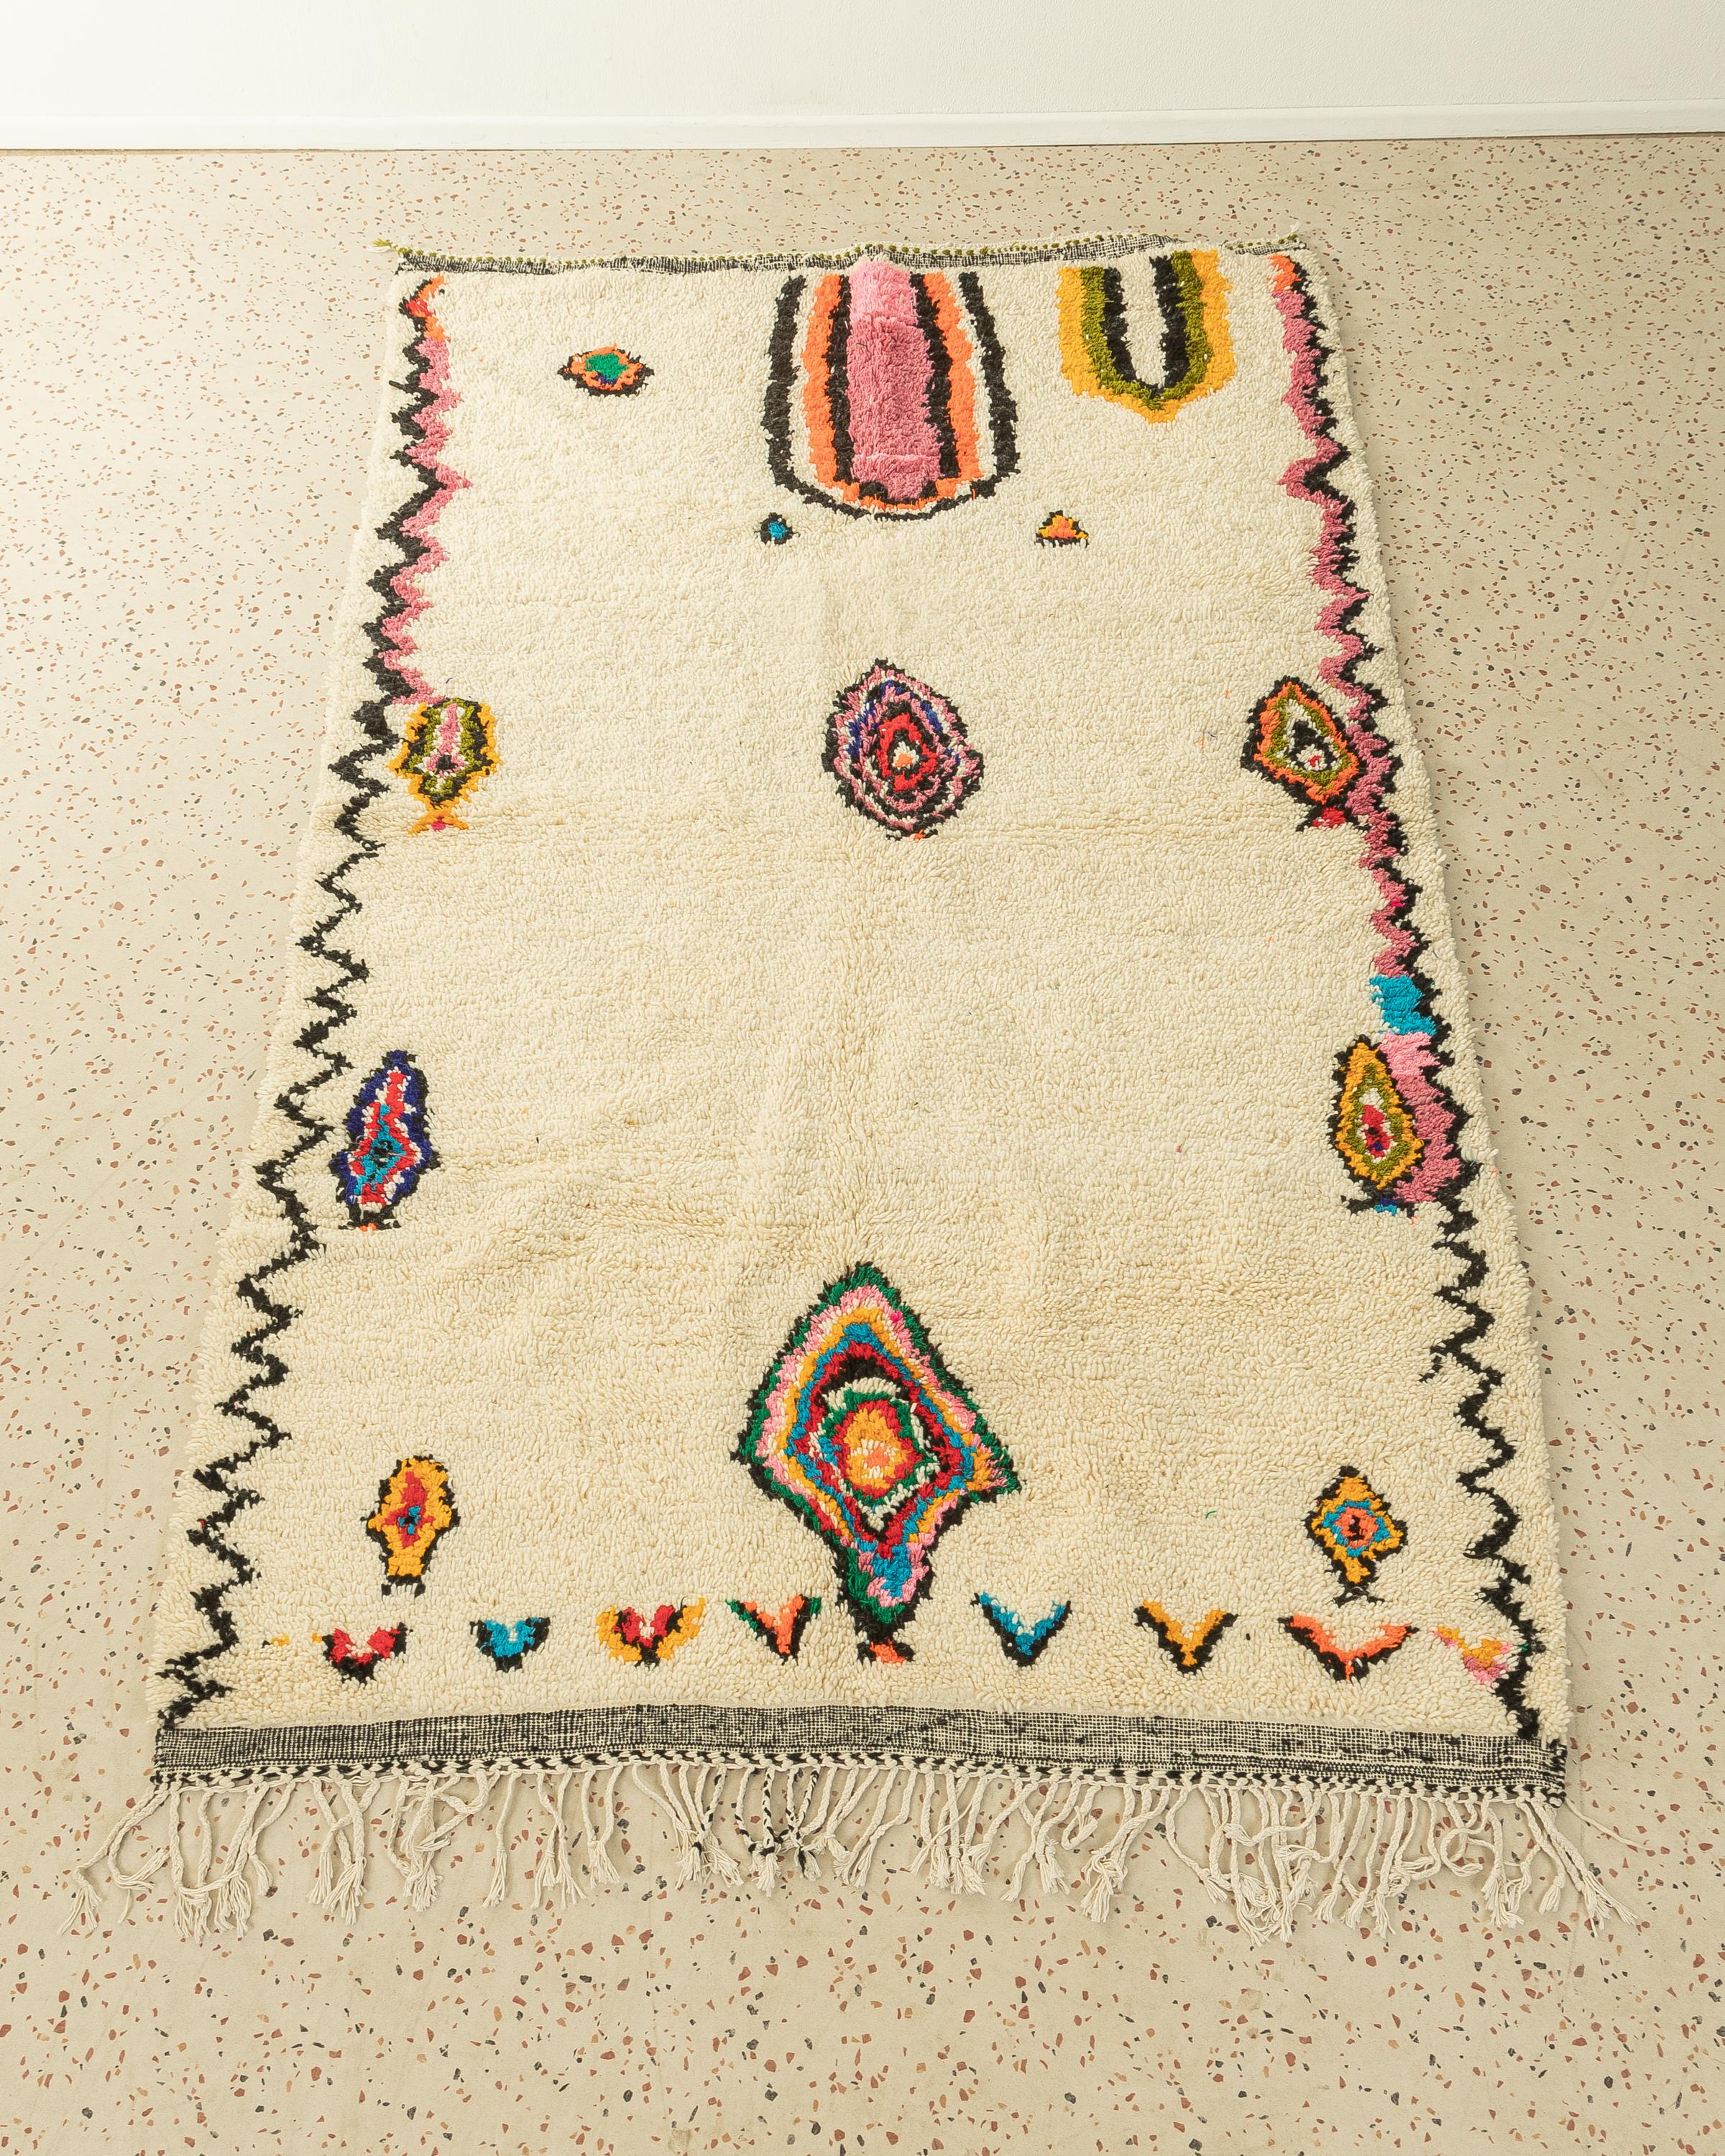 Sea Shells ist ein moderner Teppich aus 100 % Wolle - dick und weich, angenehm zu tragen. Unsere Berberteppiche werden von Amazigh-Frauen im Atlasgebirge handgewebt und handgeknüpft. Diese Gemeinschaften stellen schon seit Tausenden von Jahren